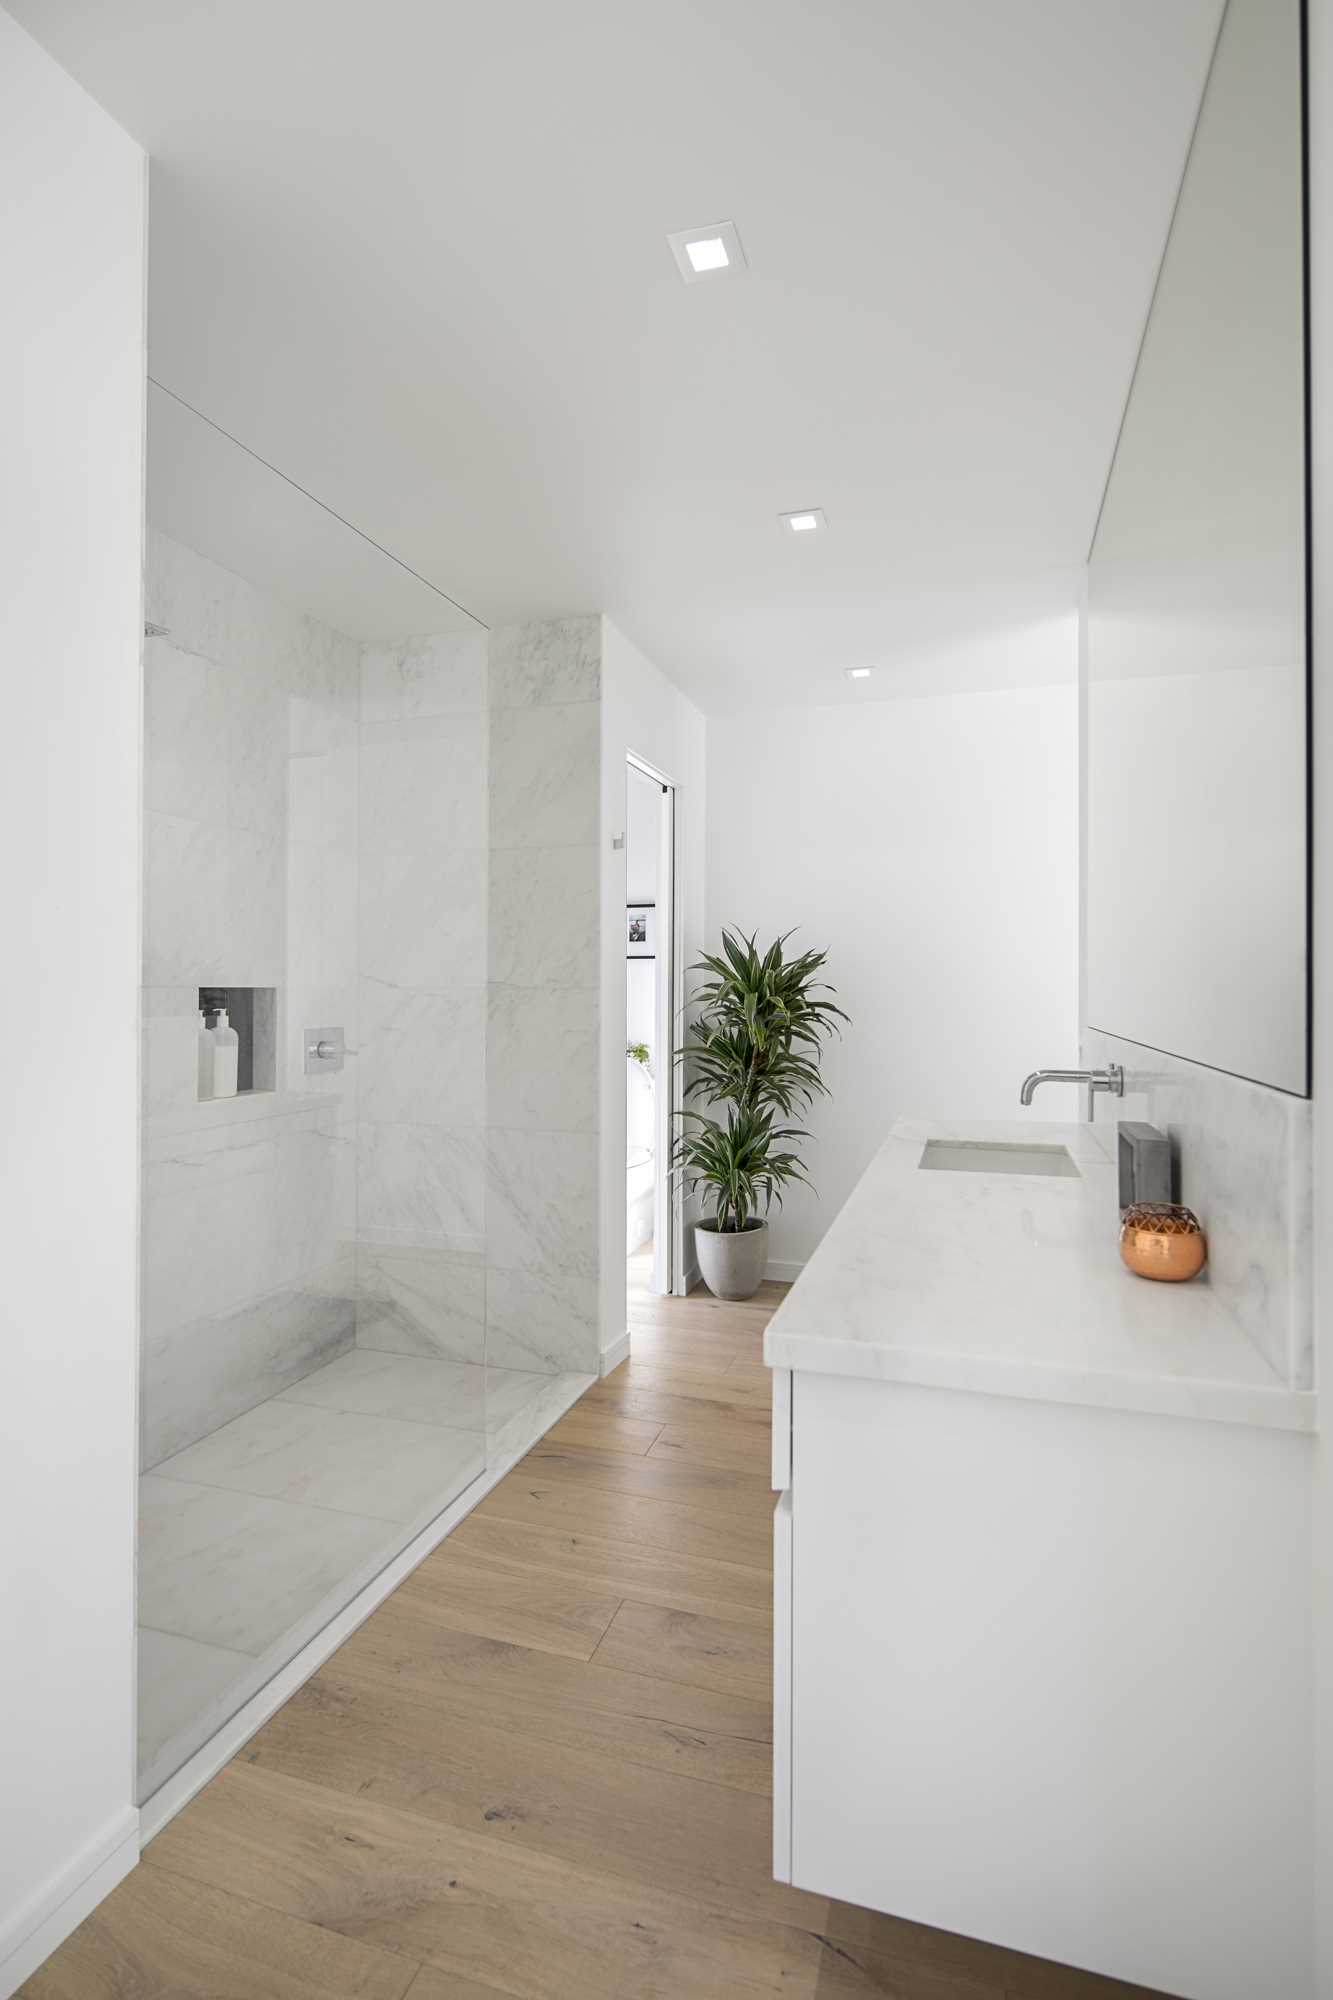 În această baie modernă, există o cabină de duș mare din sticlă, poziționată vizavi de chiuveta albă.